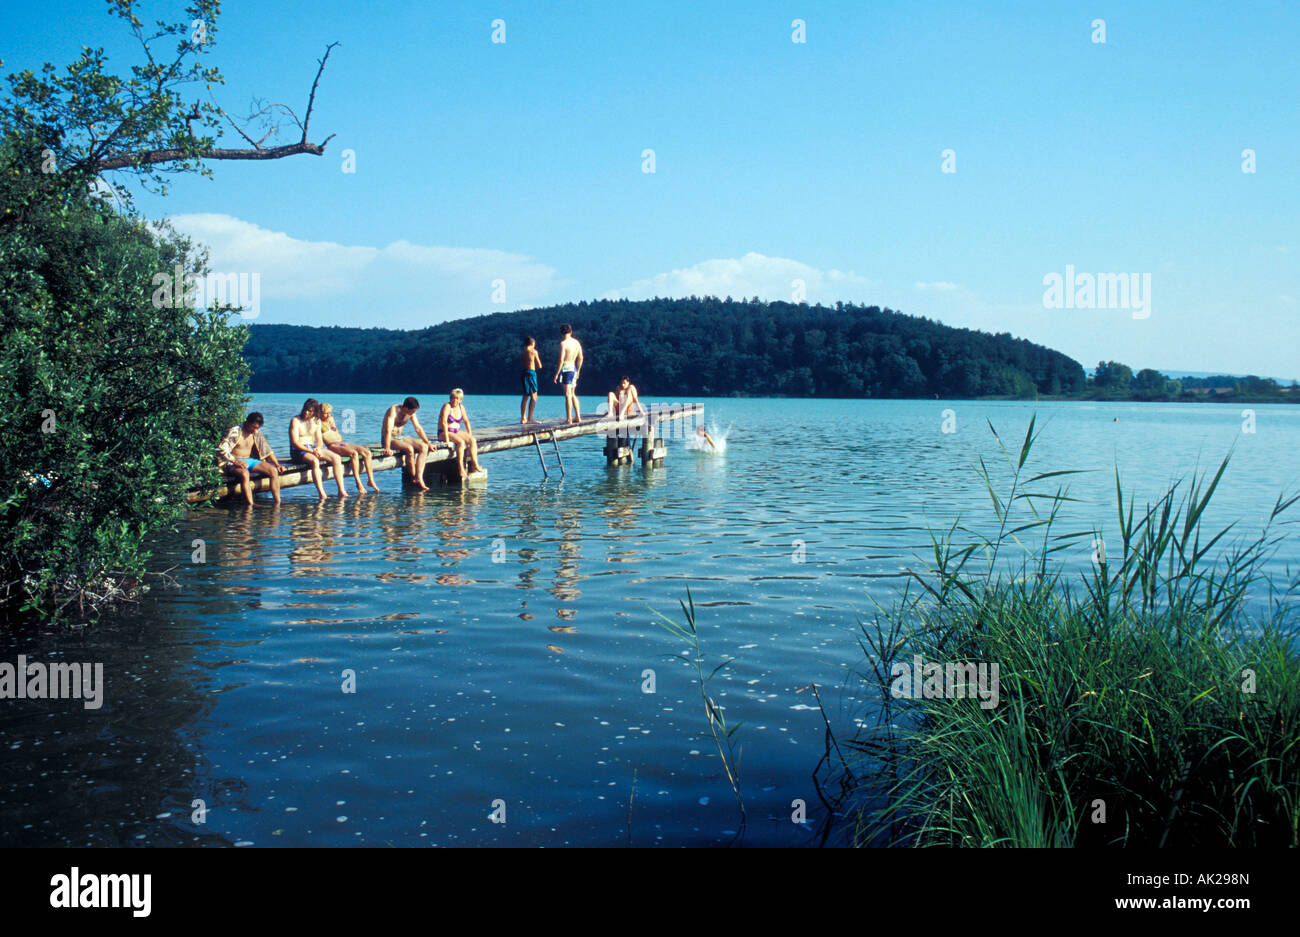 Lake near Radolfzell, Germany Stock Photo